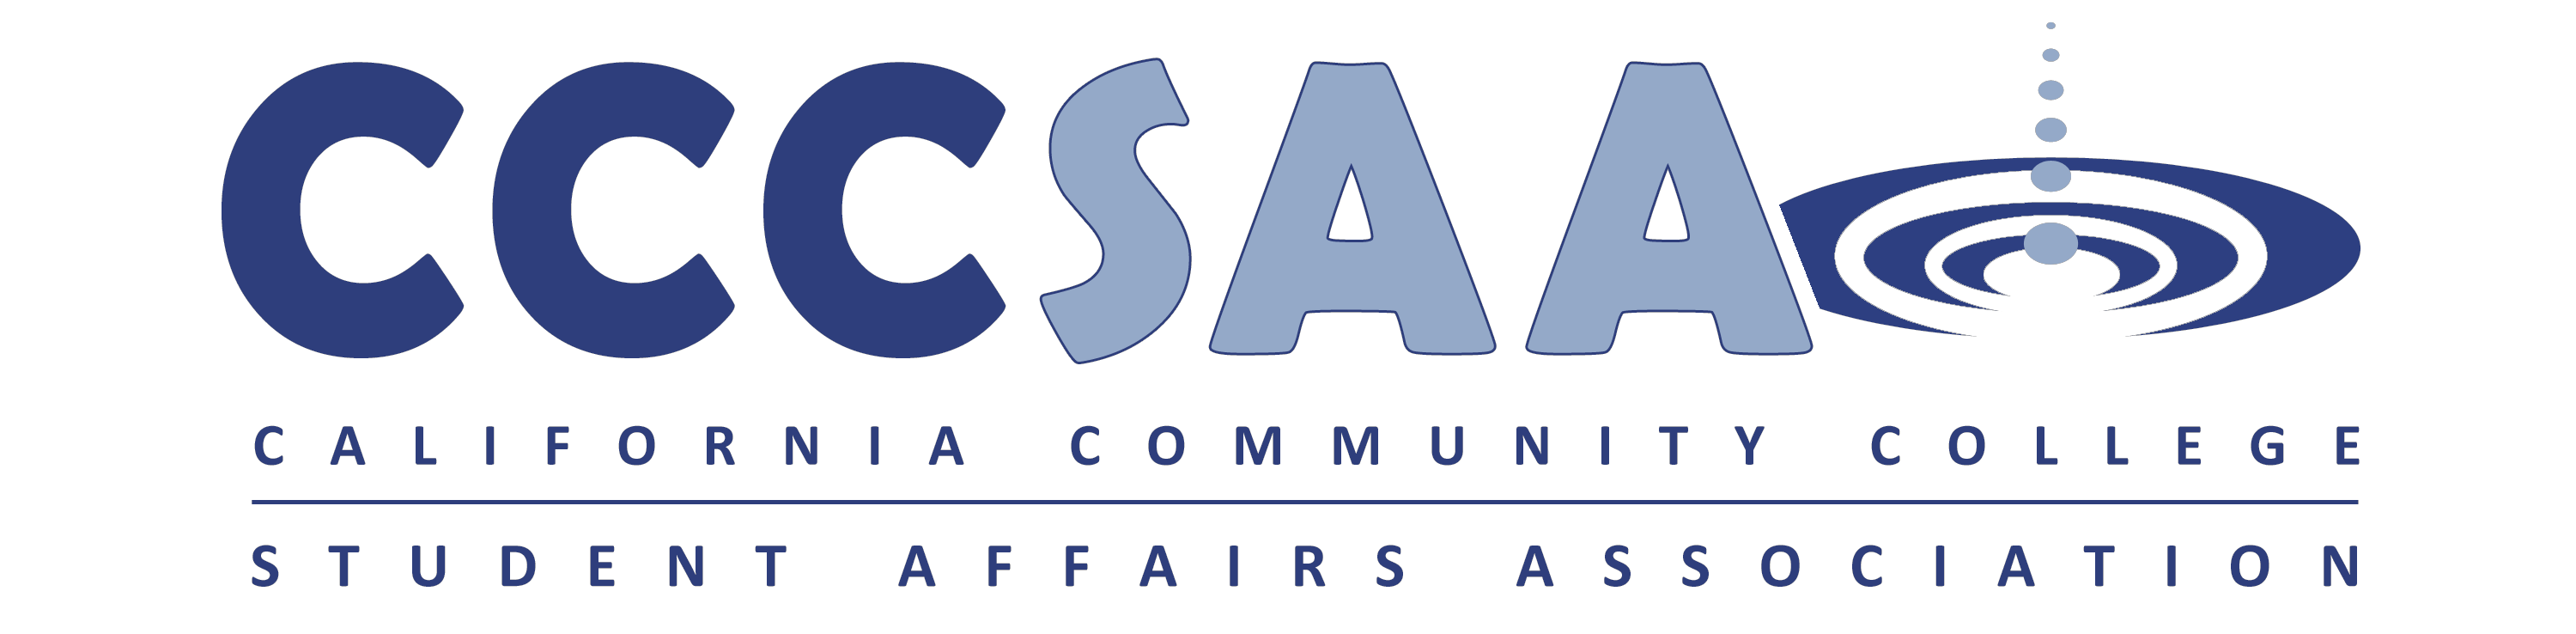 CCCSAA Logo